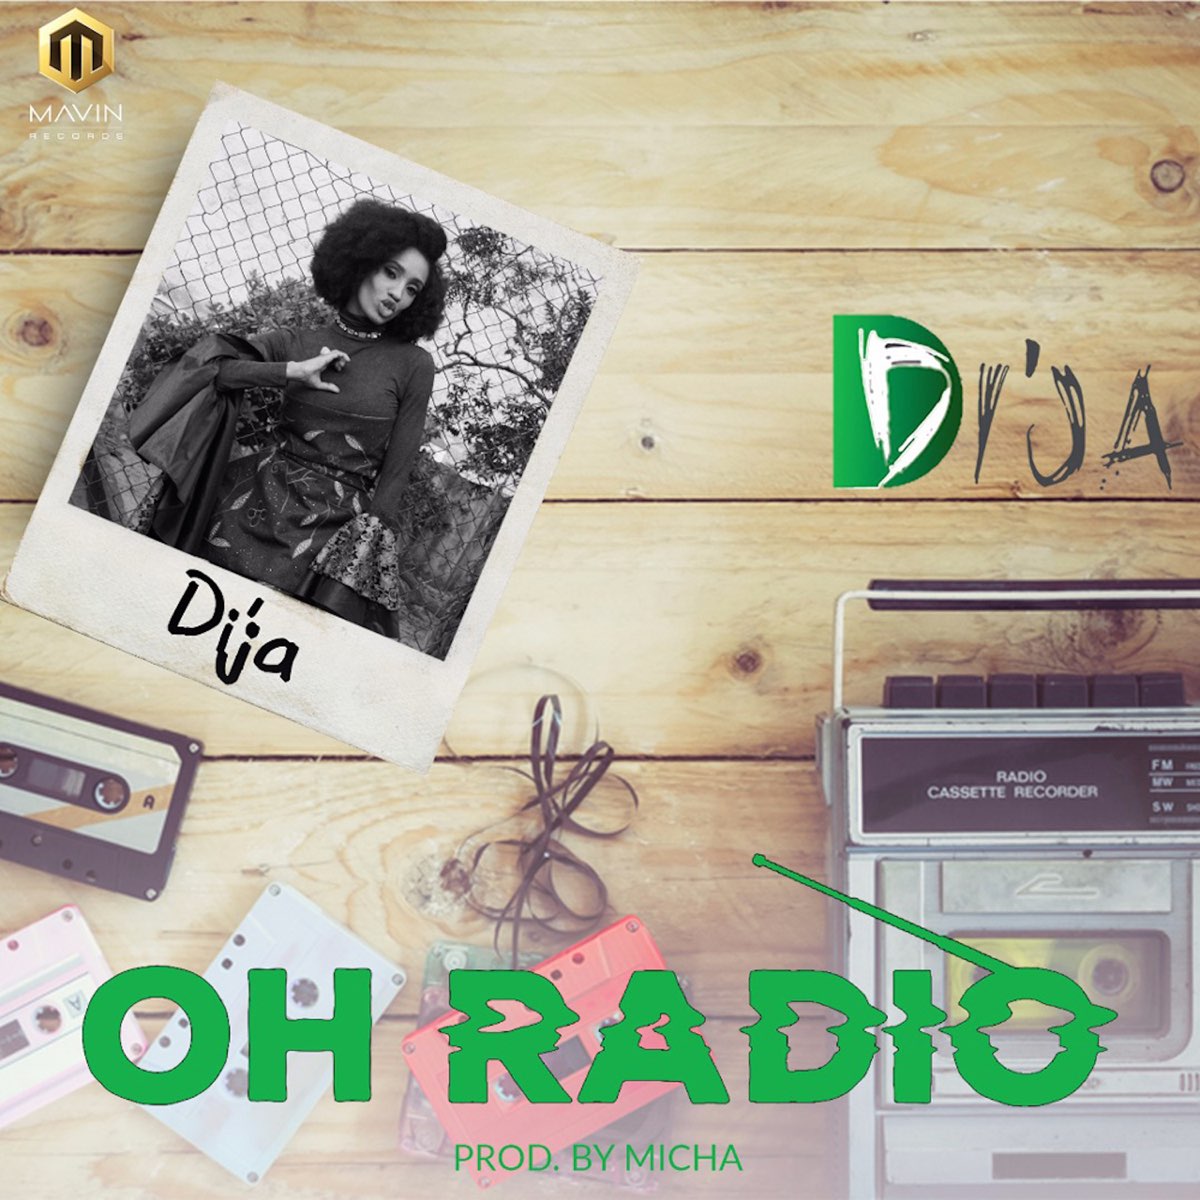 Oh Radio - Single by Di'Ja on Apple Music